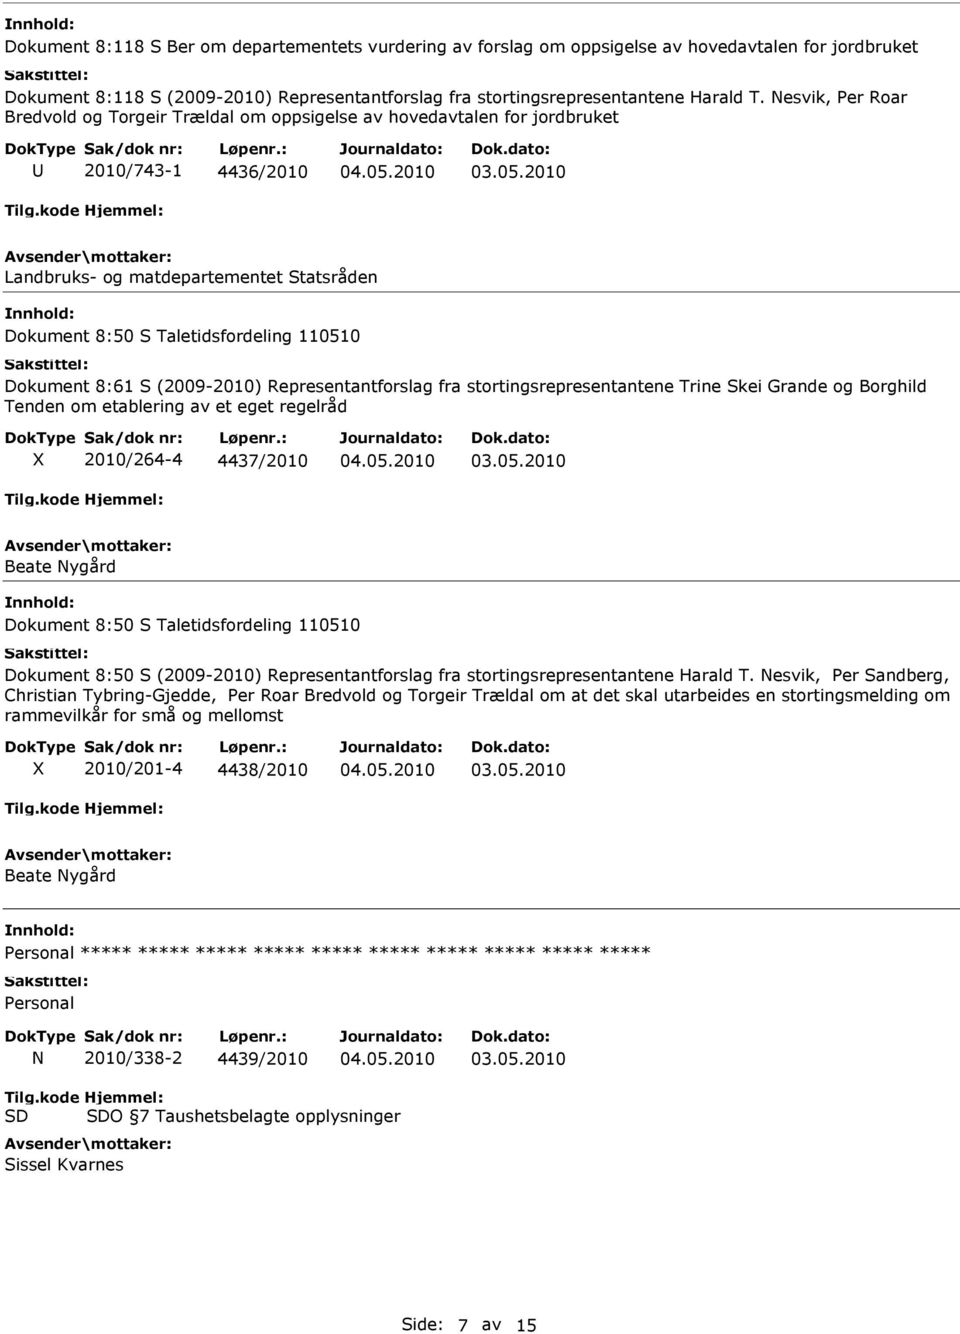 Dokument 8:61 S (2009-2010) Representantforslag fra stortingsrepresentantene Trine Skei Grande og Borghild Tenden om etablering av et eget regelråd 2010/264-4 4437/2010 Beate Nygård Dokument 8:50 S